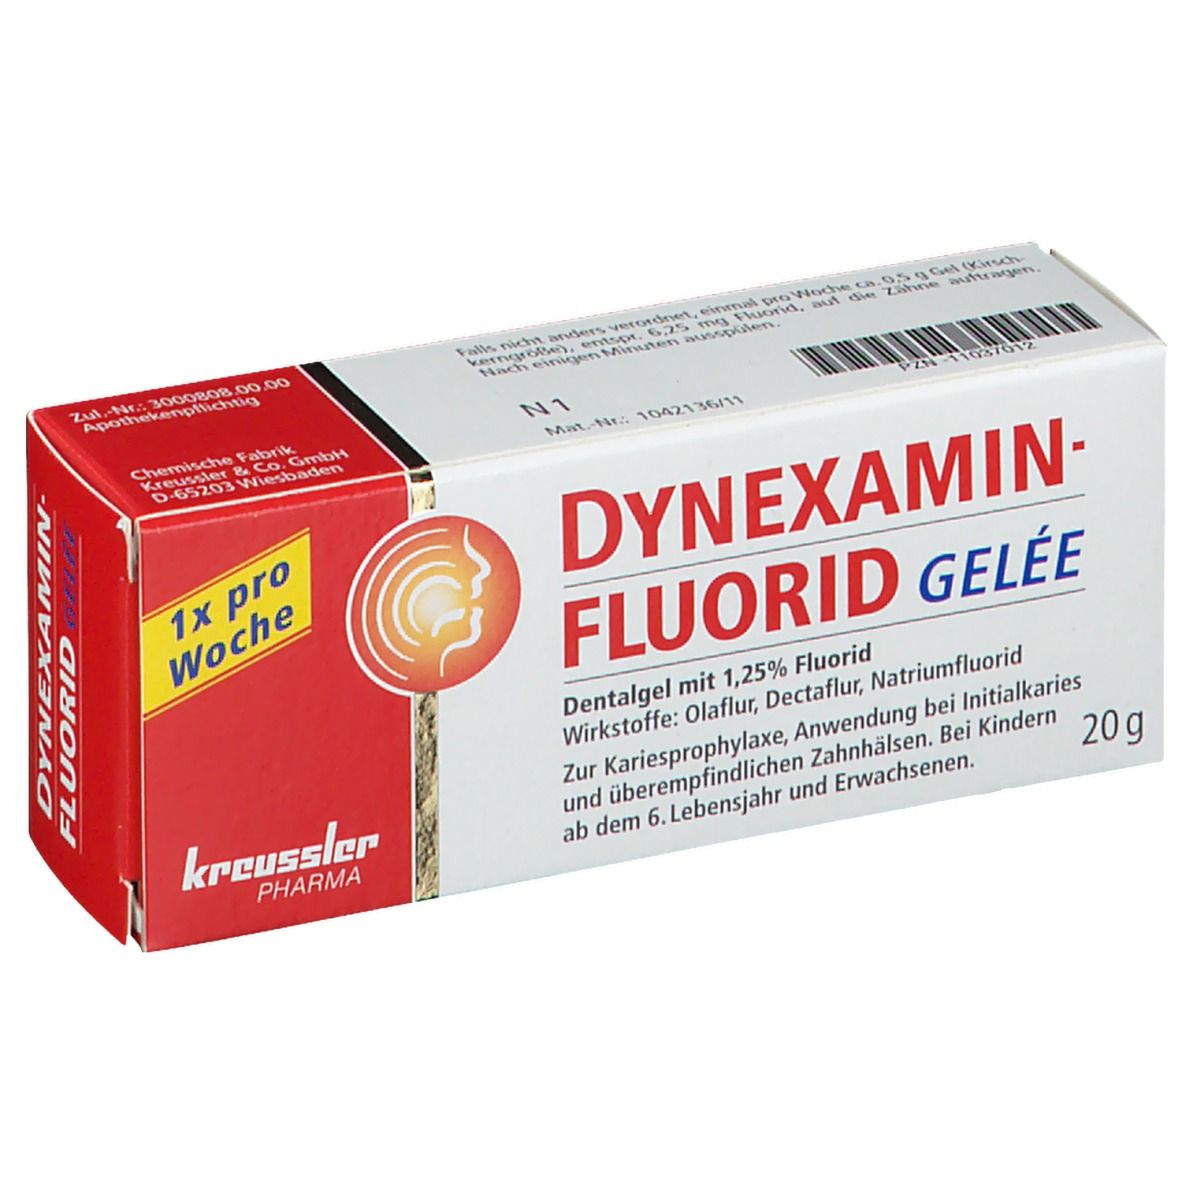 Dynexaminfluorid Gelee Dentalgel